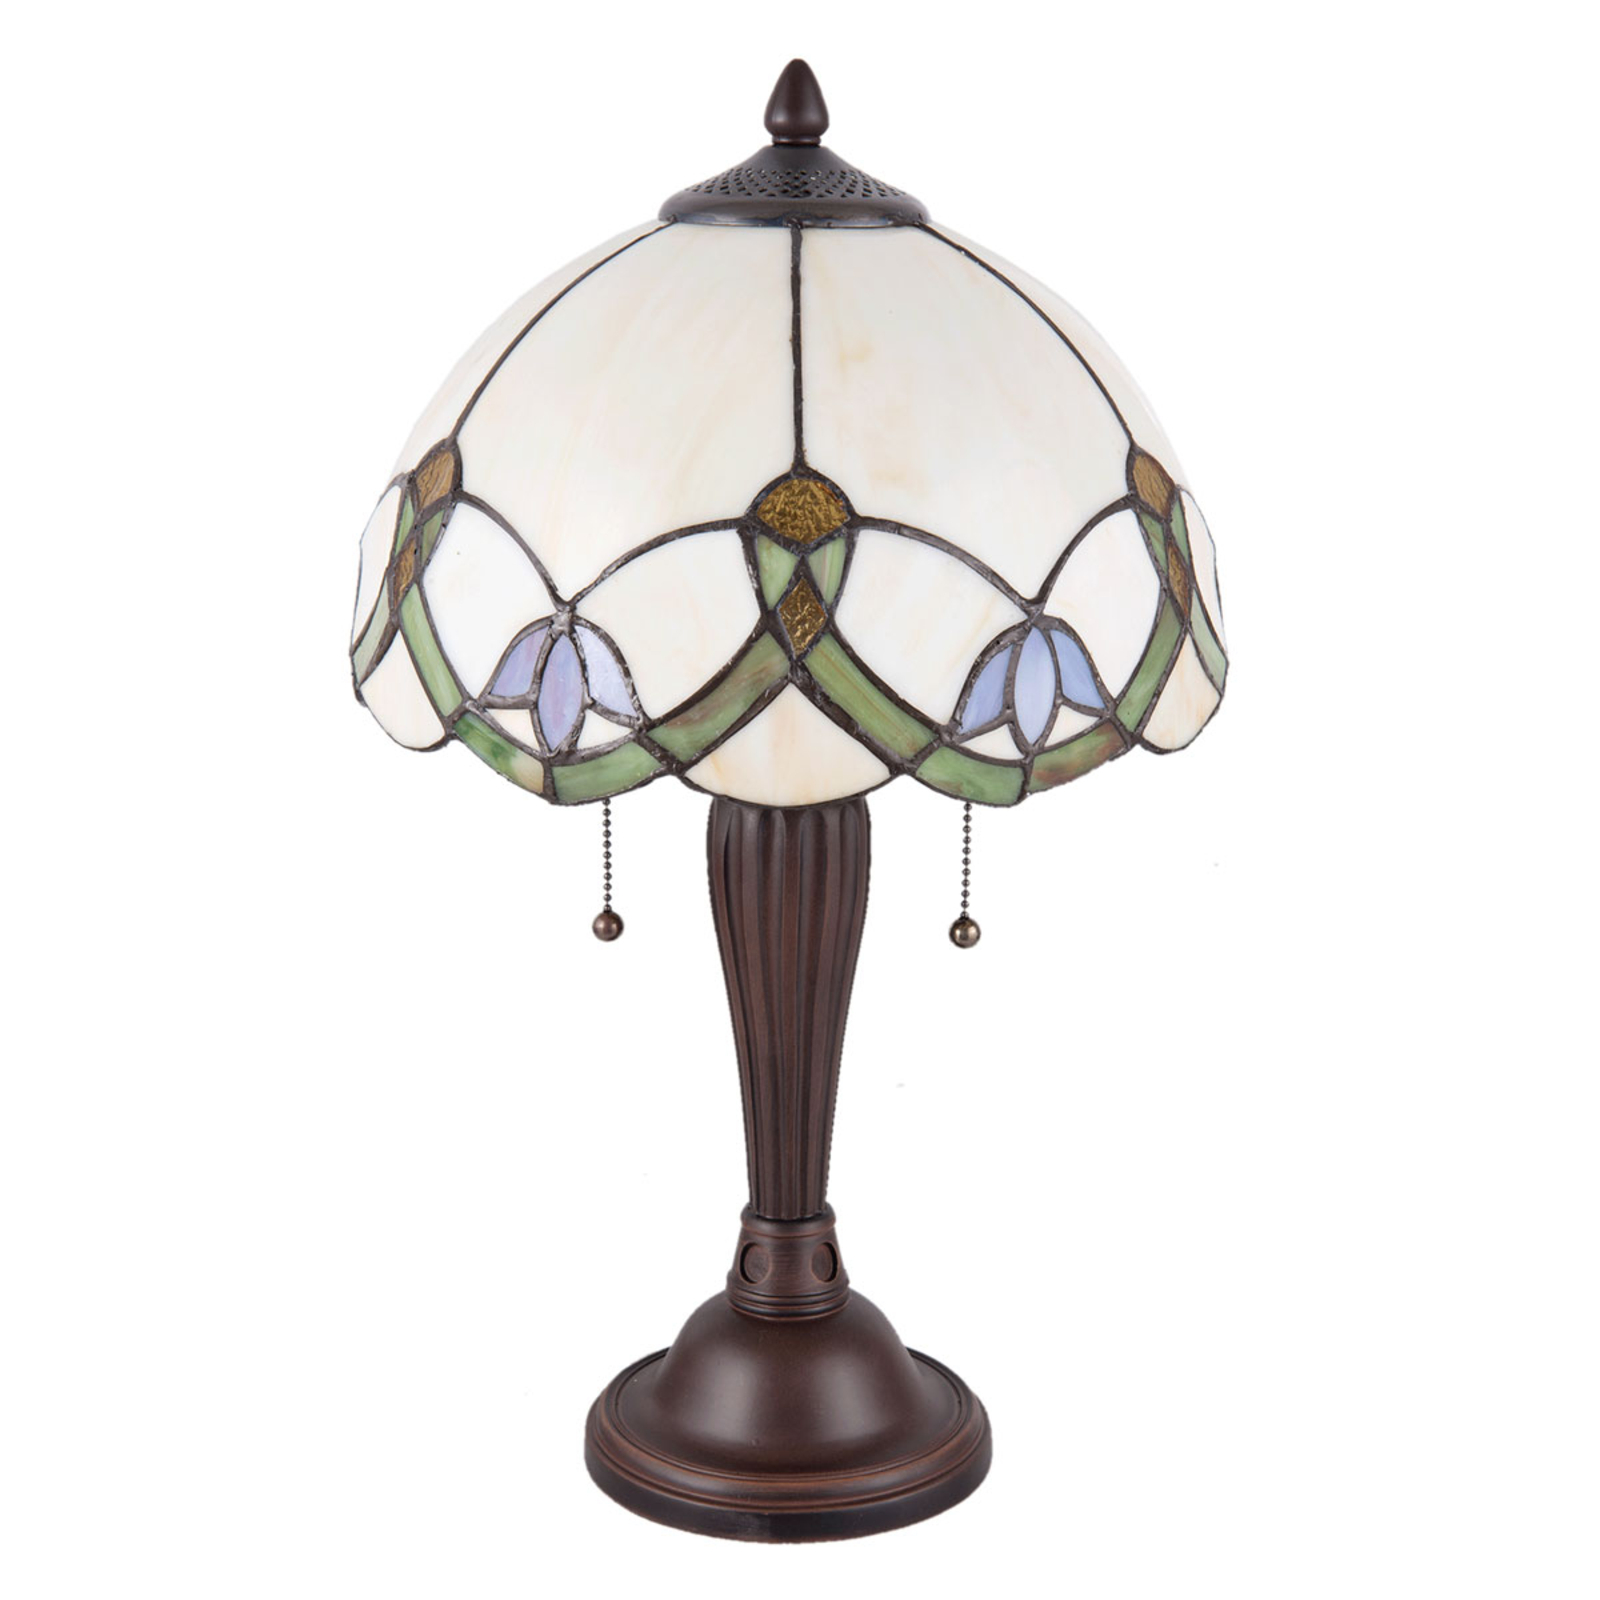 Tafellamp 5918 met wit-bont Tiffany-design